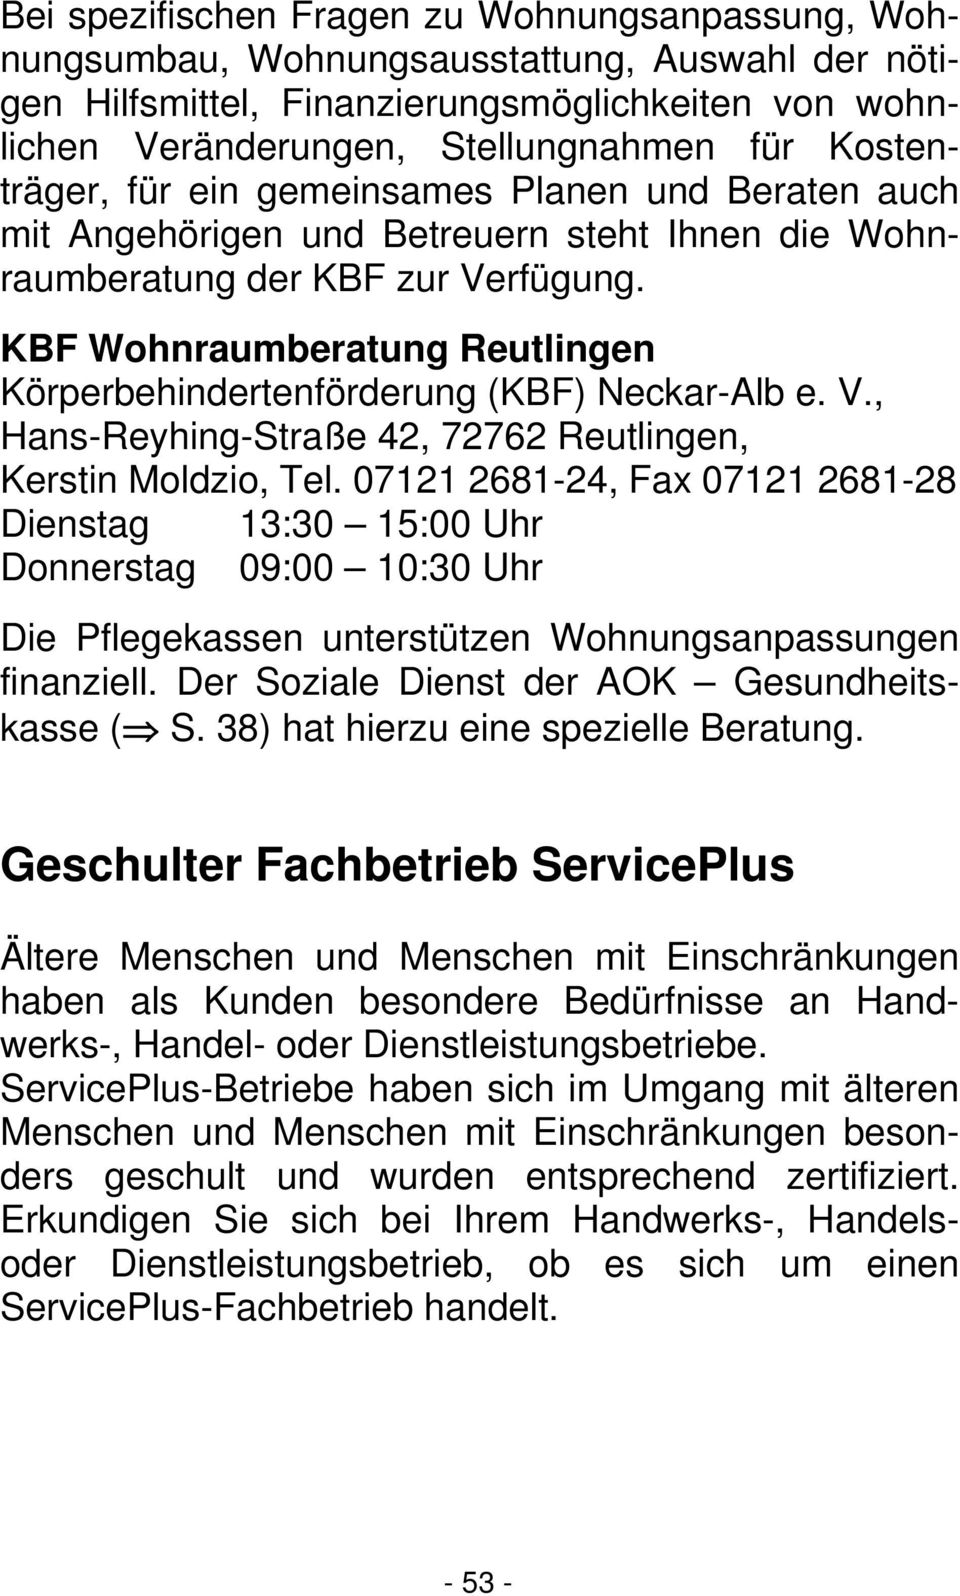 KBF Wohnraumberatung Reutlingen Körperbehindertenförderung (KBF) Neckar-Alb e. V., Hans-Reyhing-Straße 42, 72762 Reutlingen, Kerstin Moldzio, Tel.